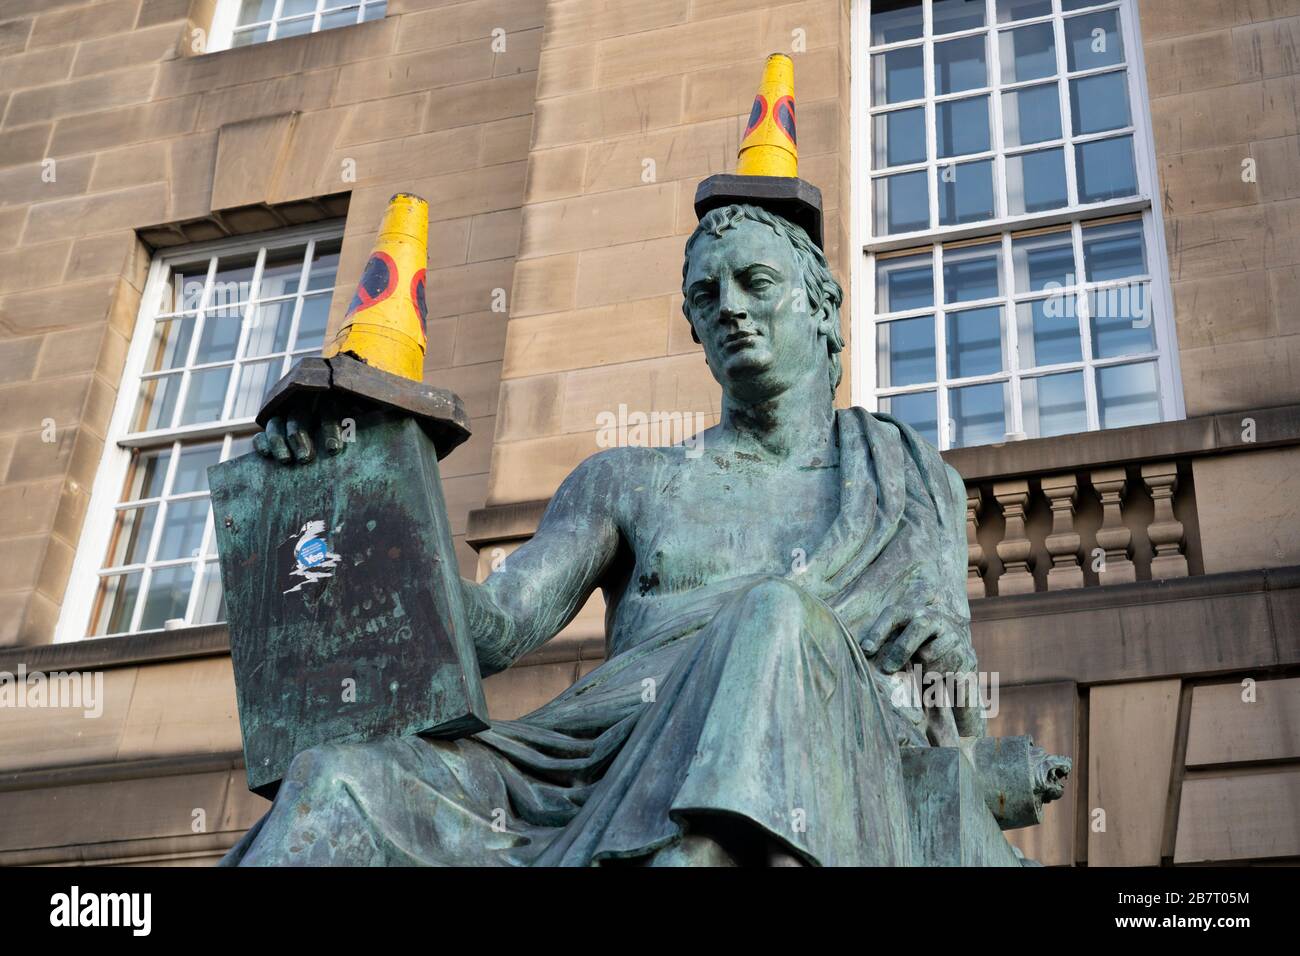 Edimburgo, Scozia, Regno Unito. 18 marzo 2020. Coni traffico posto sulla statua di David Hume sul Royal Mile di Edimburgo. Iain Masterton/Alamy Live News. Foto Stock